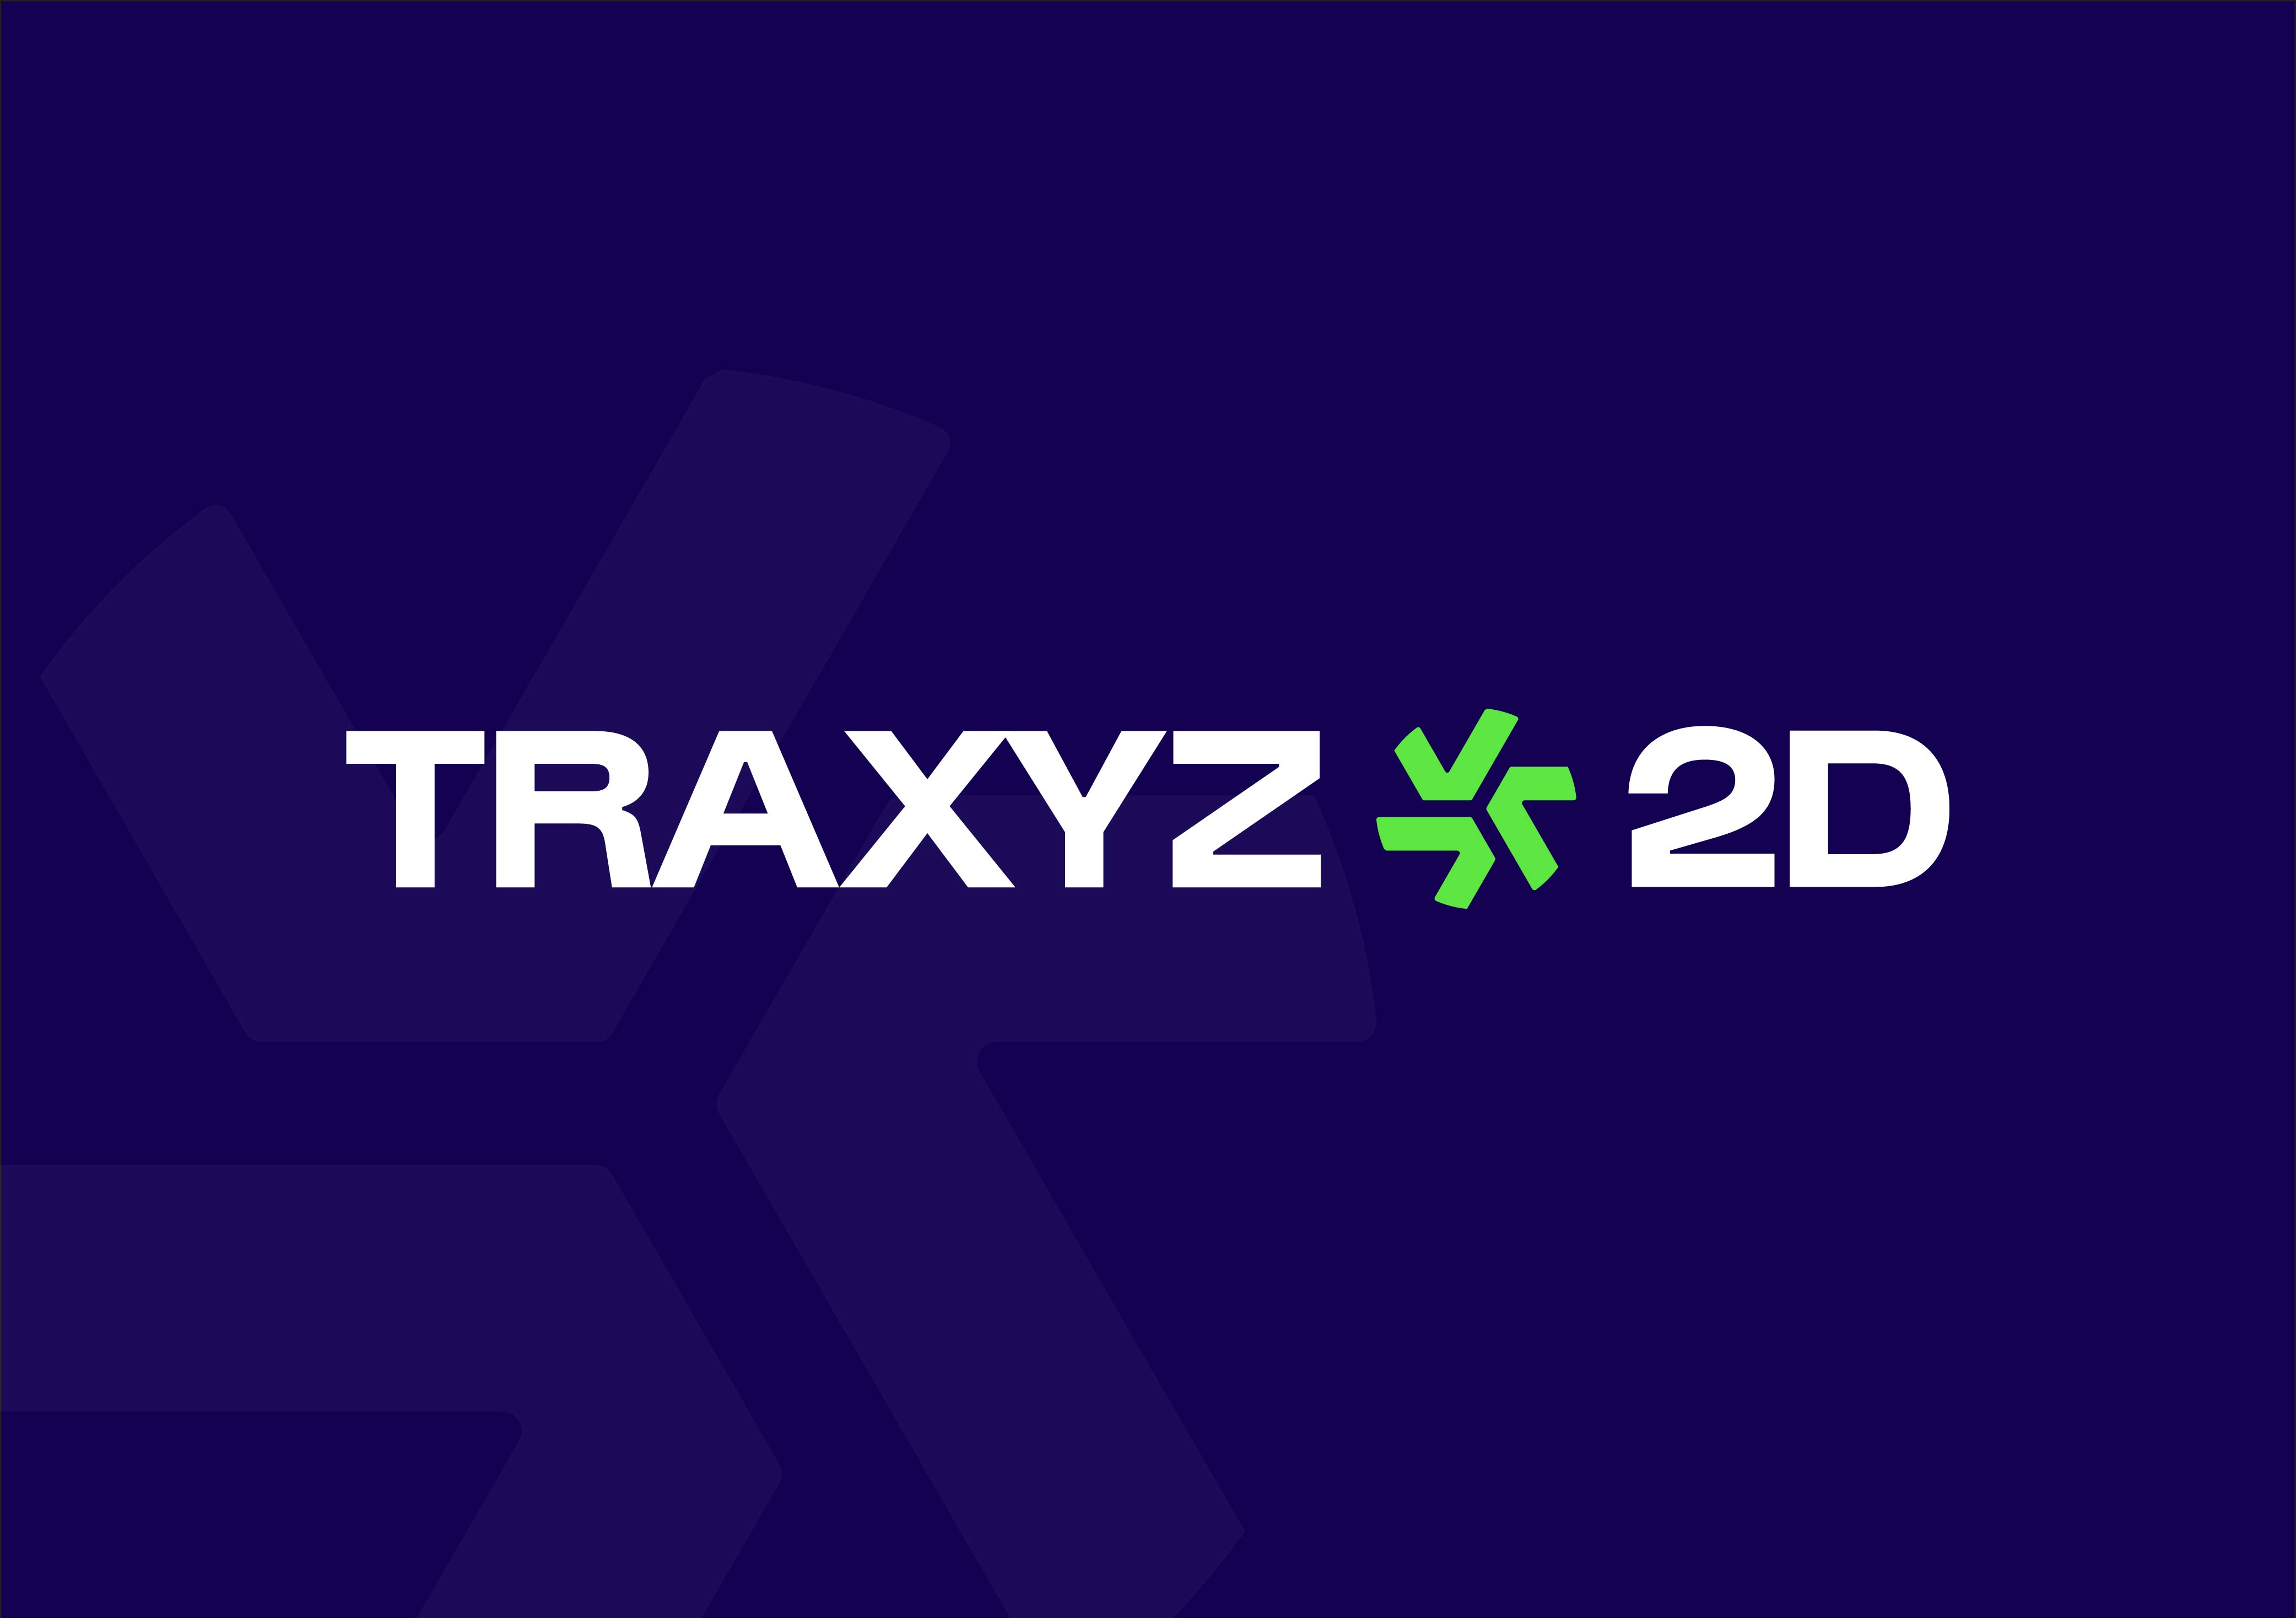 Traxyz 2D